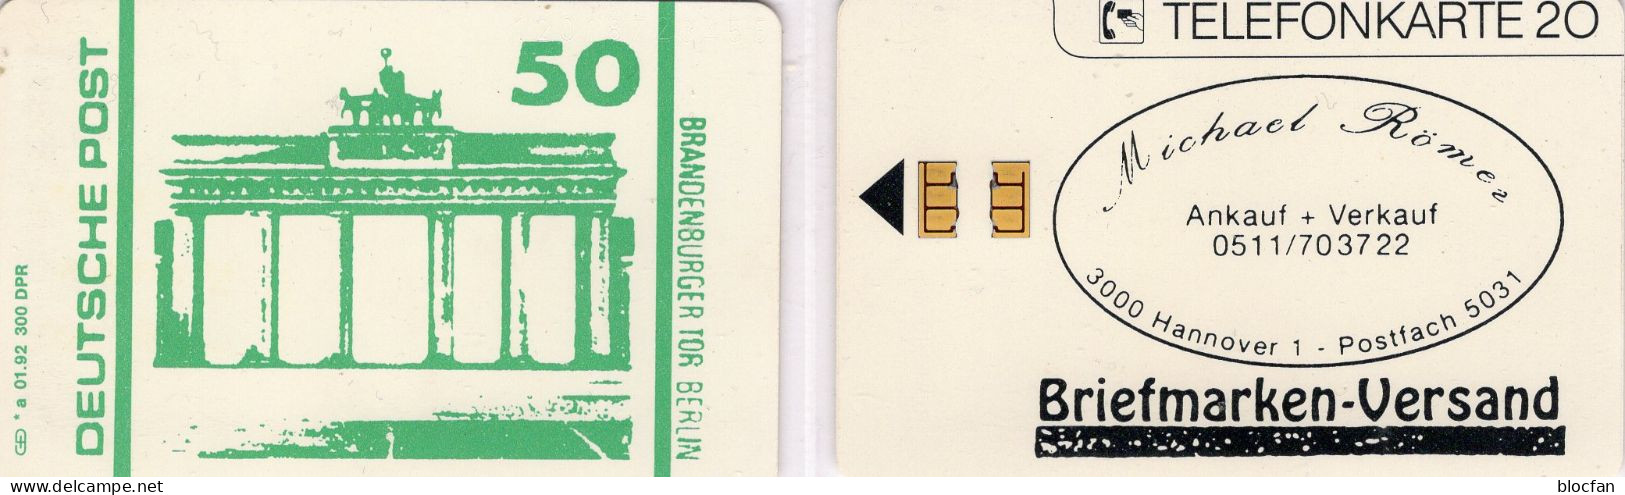 Brandenburger Tor TK N *a 01/1992 300Expl.( K450) ** 150€ Visitenkarte Römer-Versand TC DPost Stamps On Telecard Germany - V-Series: VIP-und Visitenkartenserie